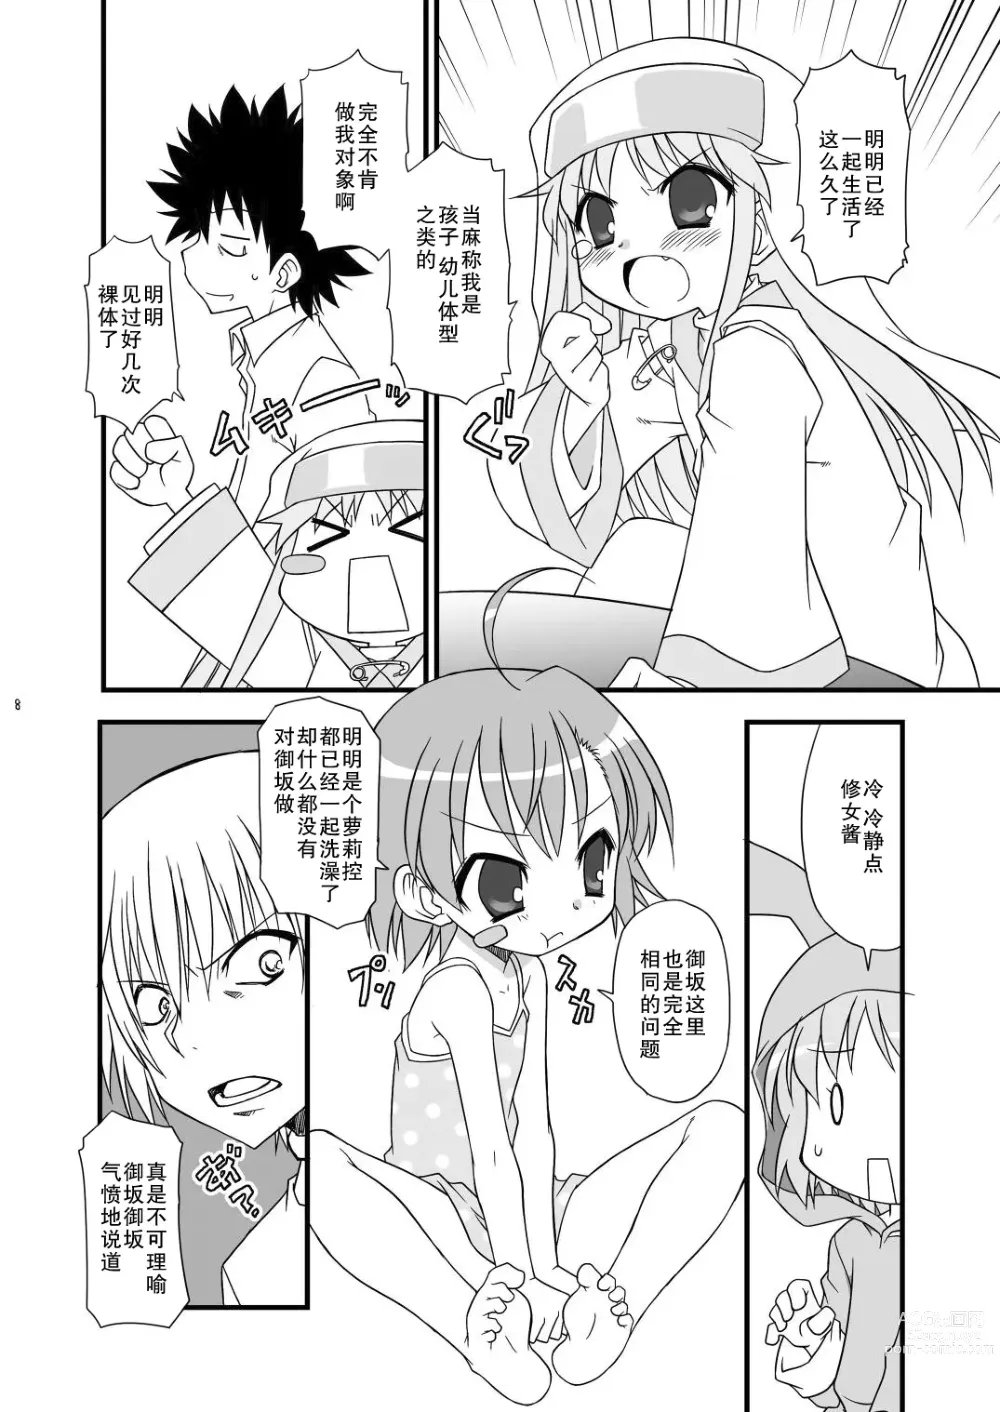 Page 9 of doujinshi KA+SHI+MA+SHI=INDEX!